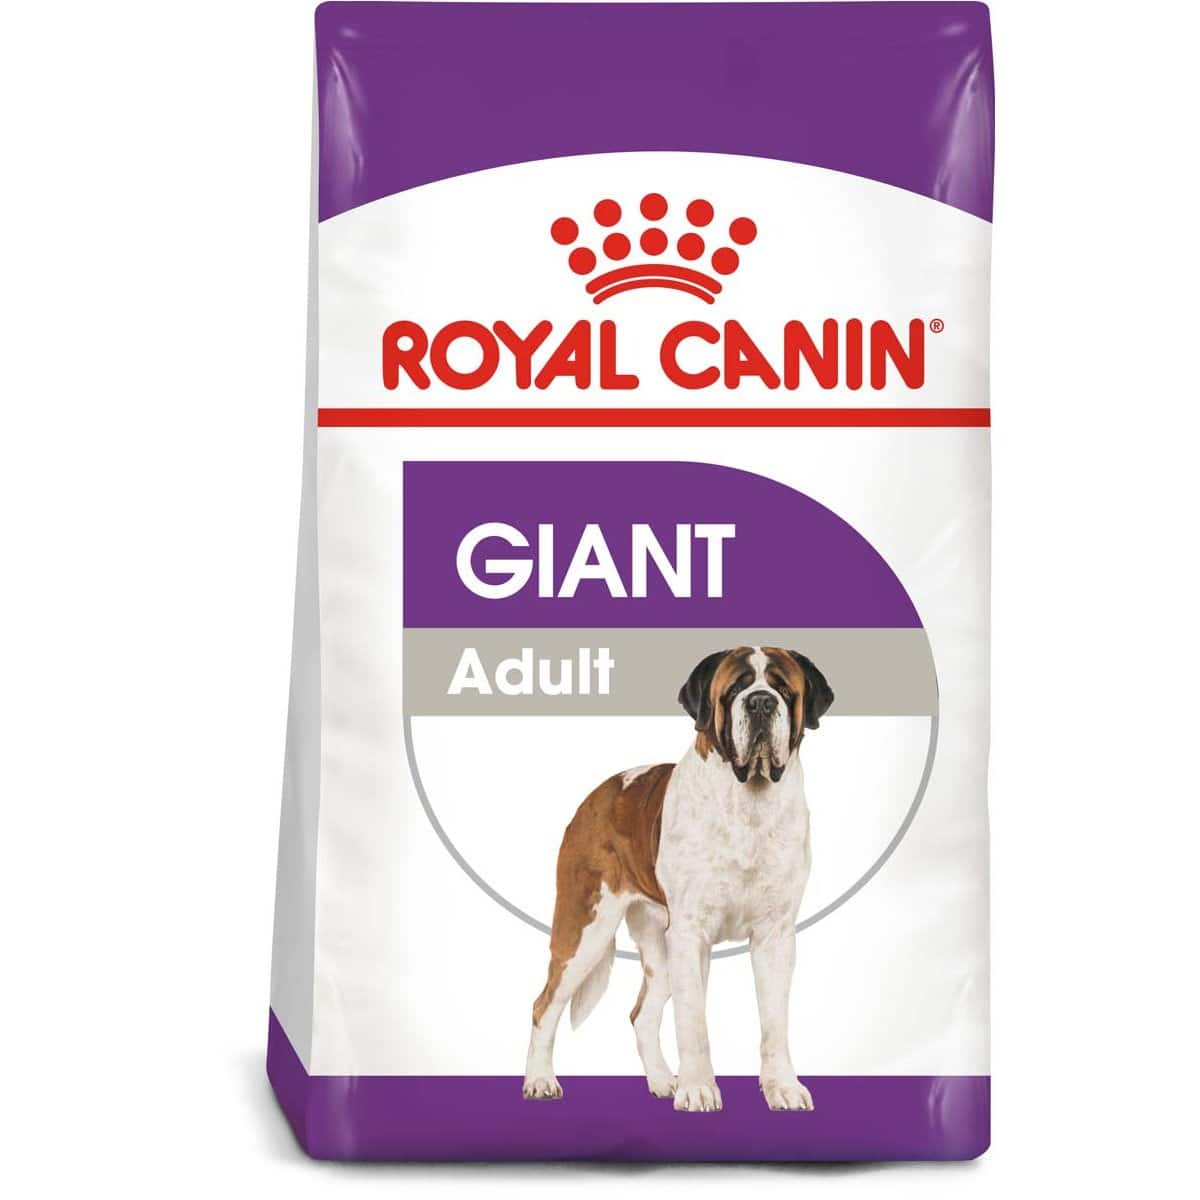 ROYAL CANIN GIANT Adult Trockenfutter für sehr große Hunde 15kg + 3kg gratis